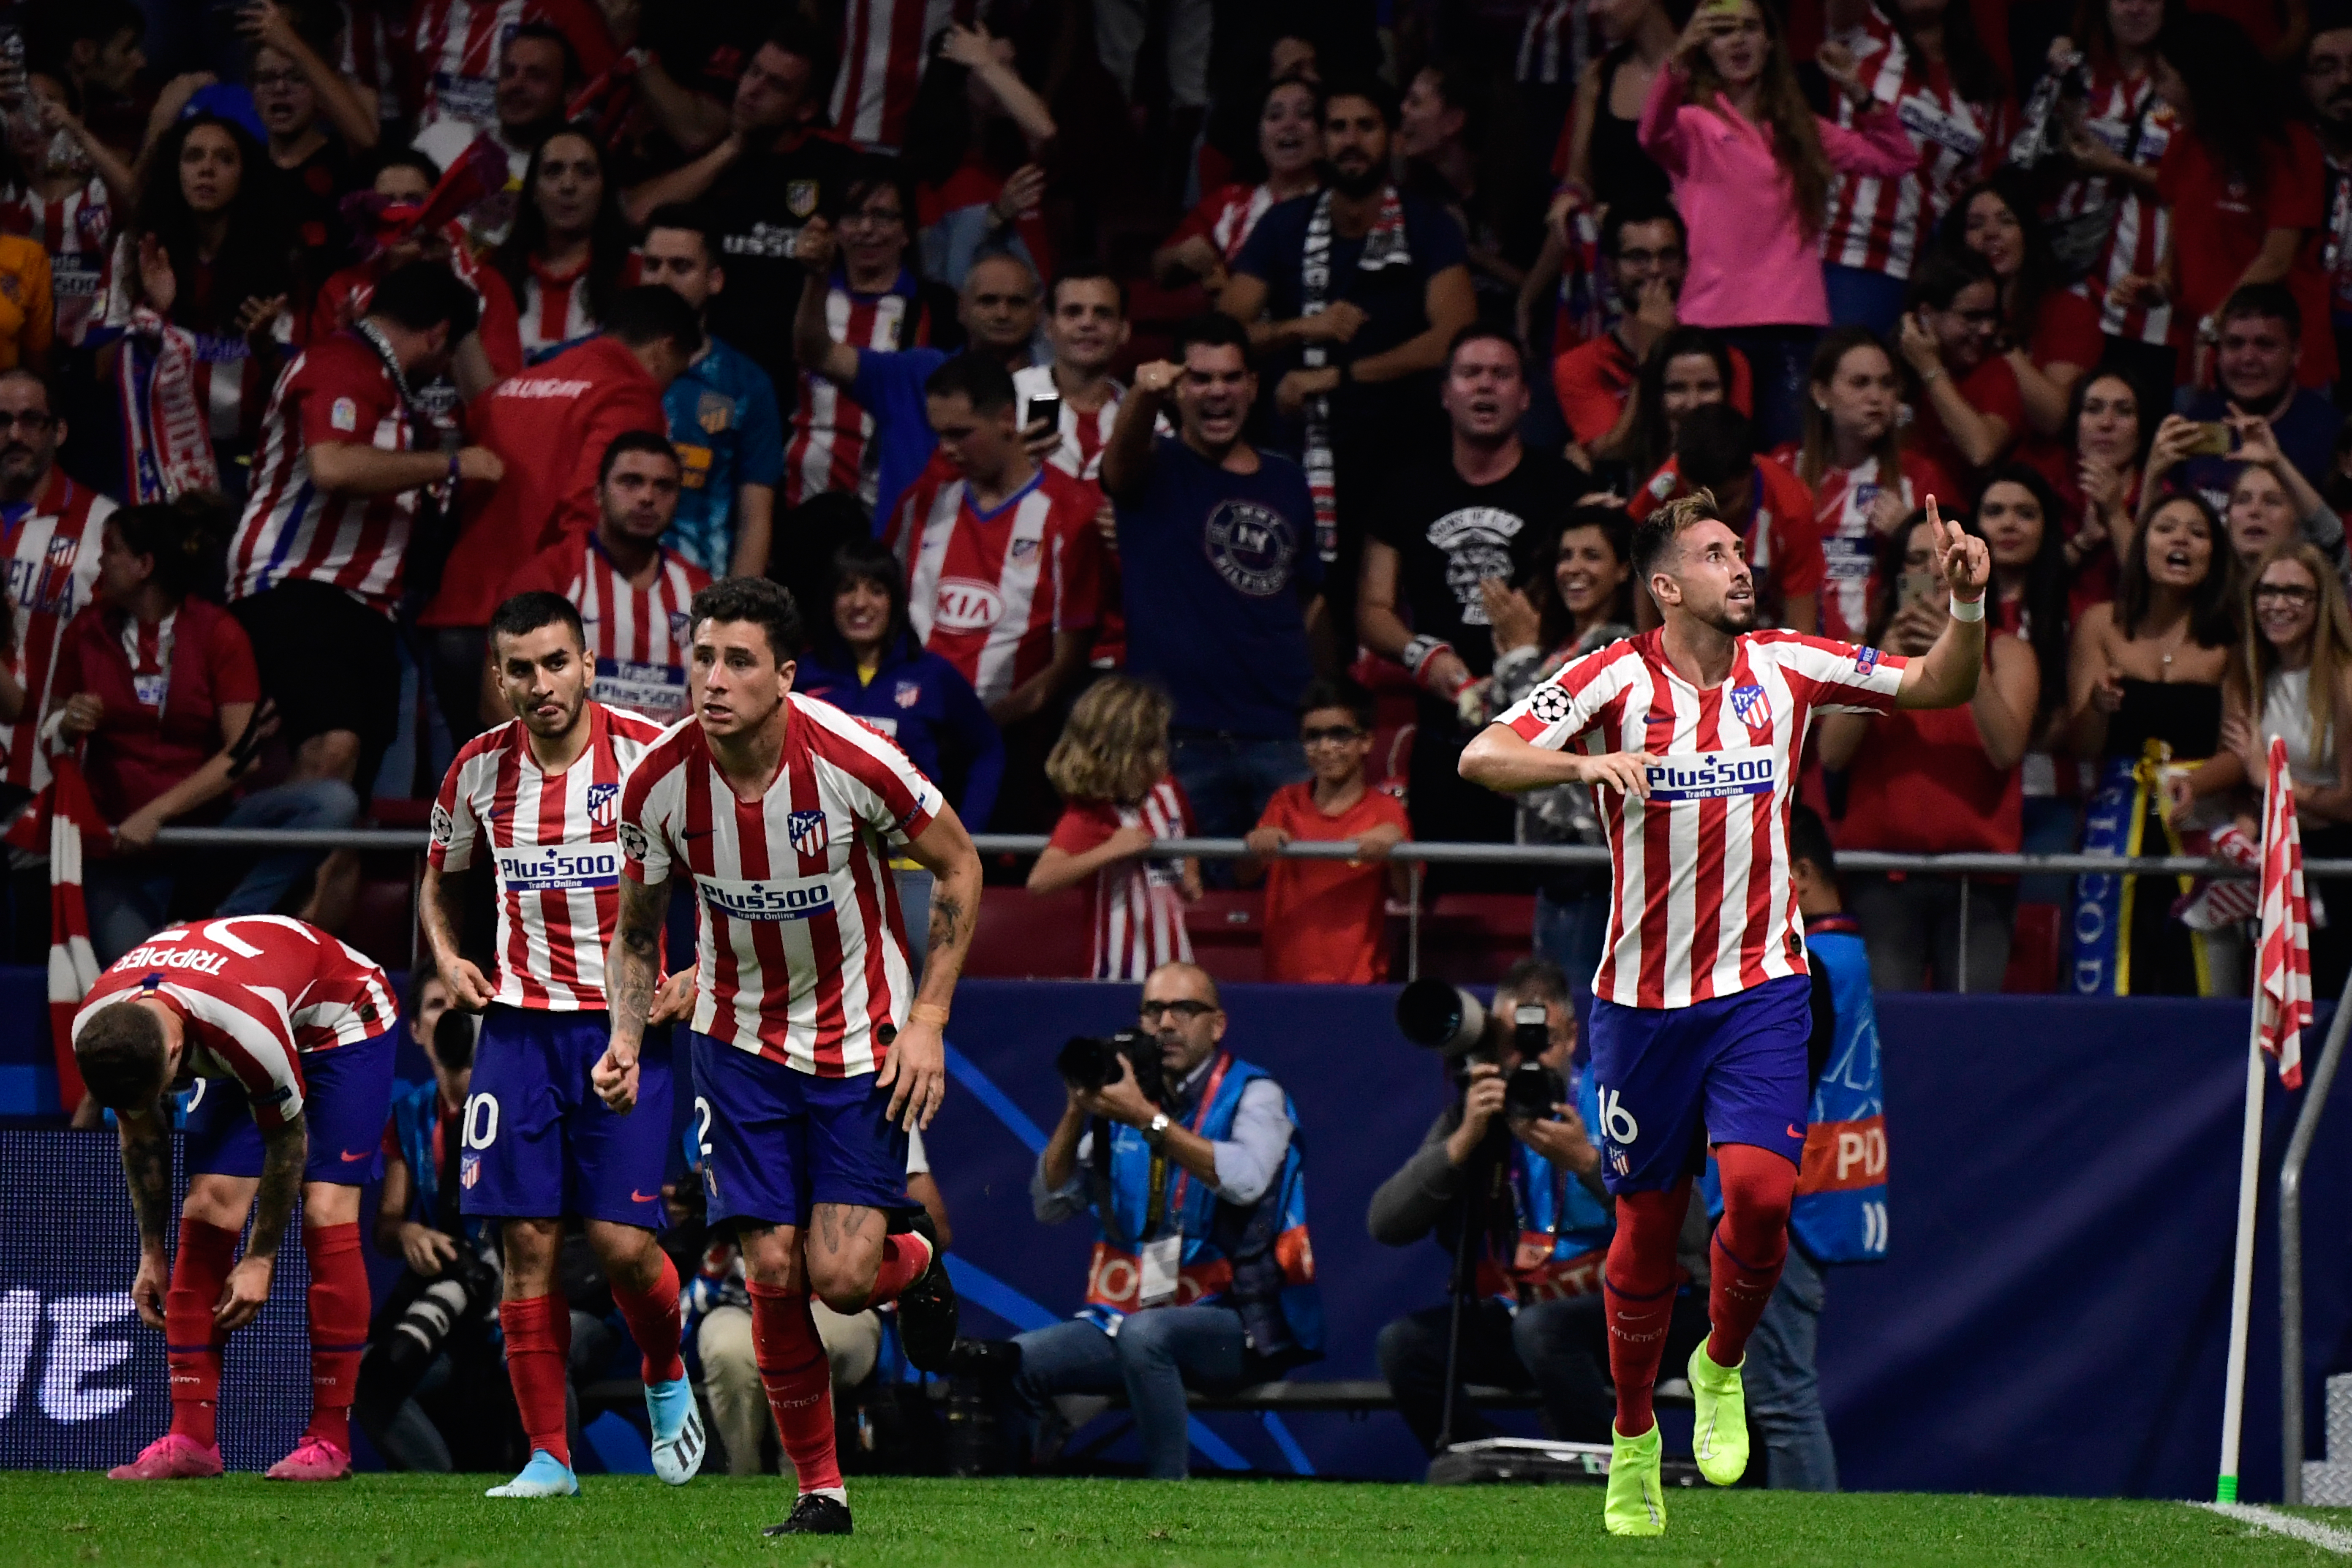 El Atlético de Madrid confirma los positivos por Covid-19 de Lemar y Herrera